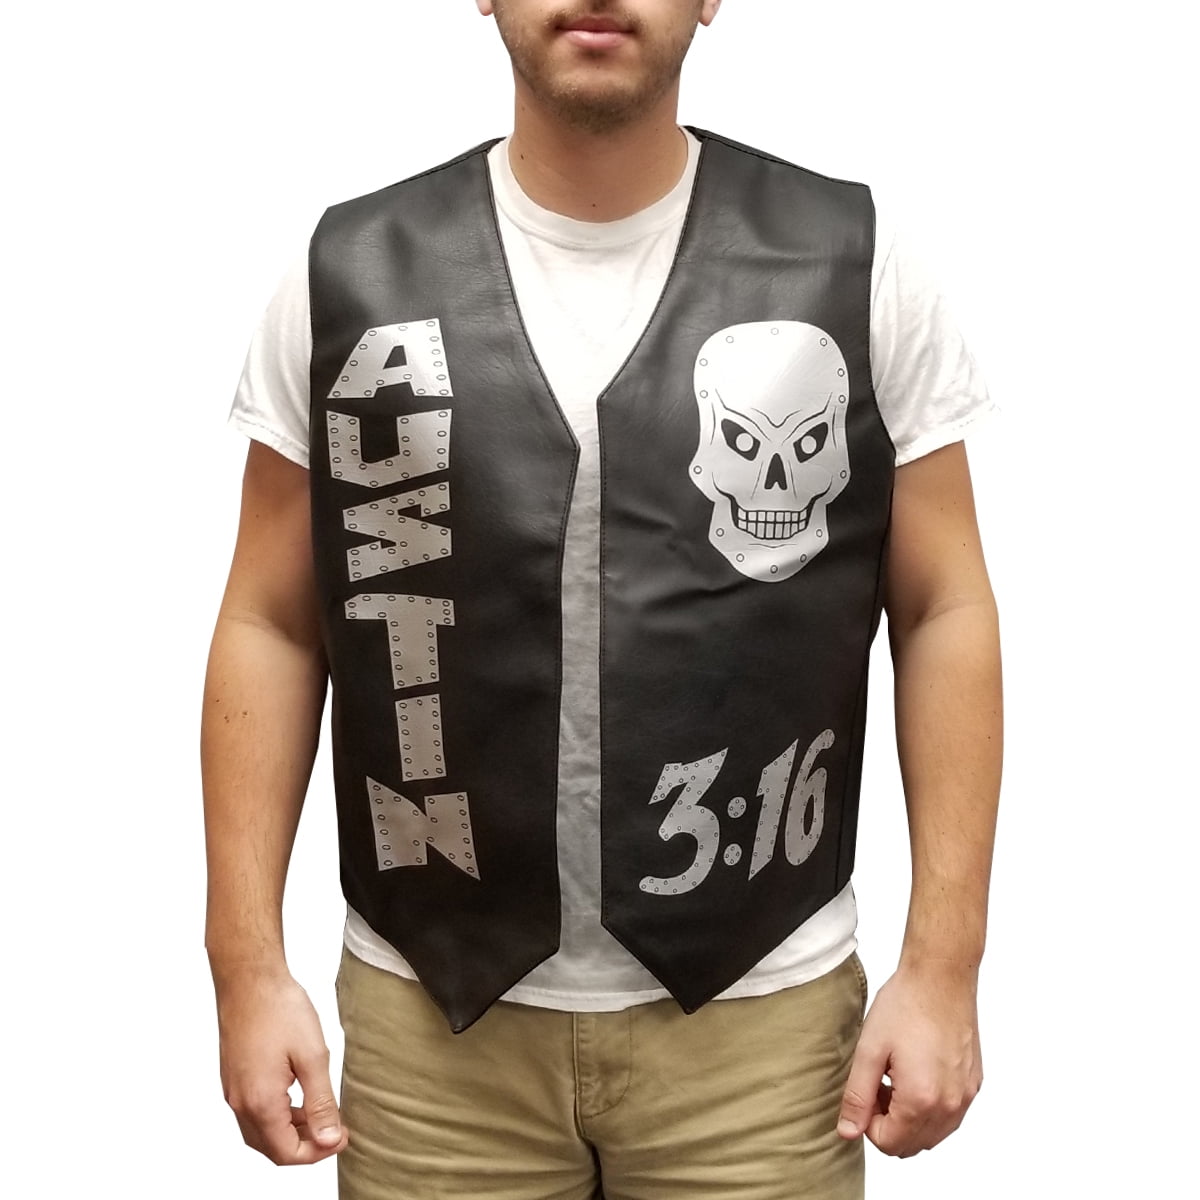 Stone Cold Vest Steve Austin 3:16 Skulls Halloween Costume Leather Wrestler Gift 